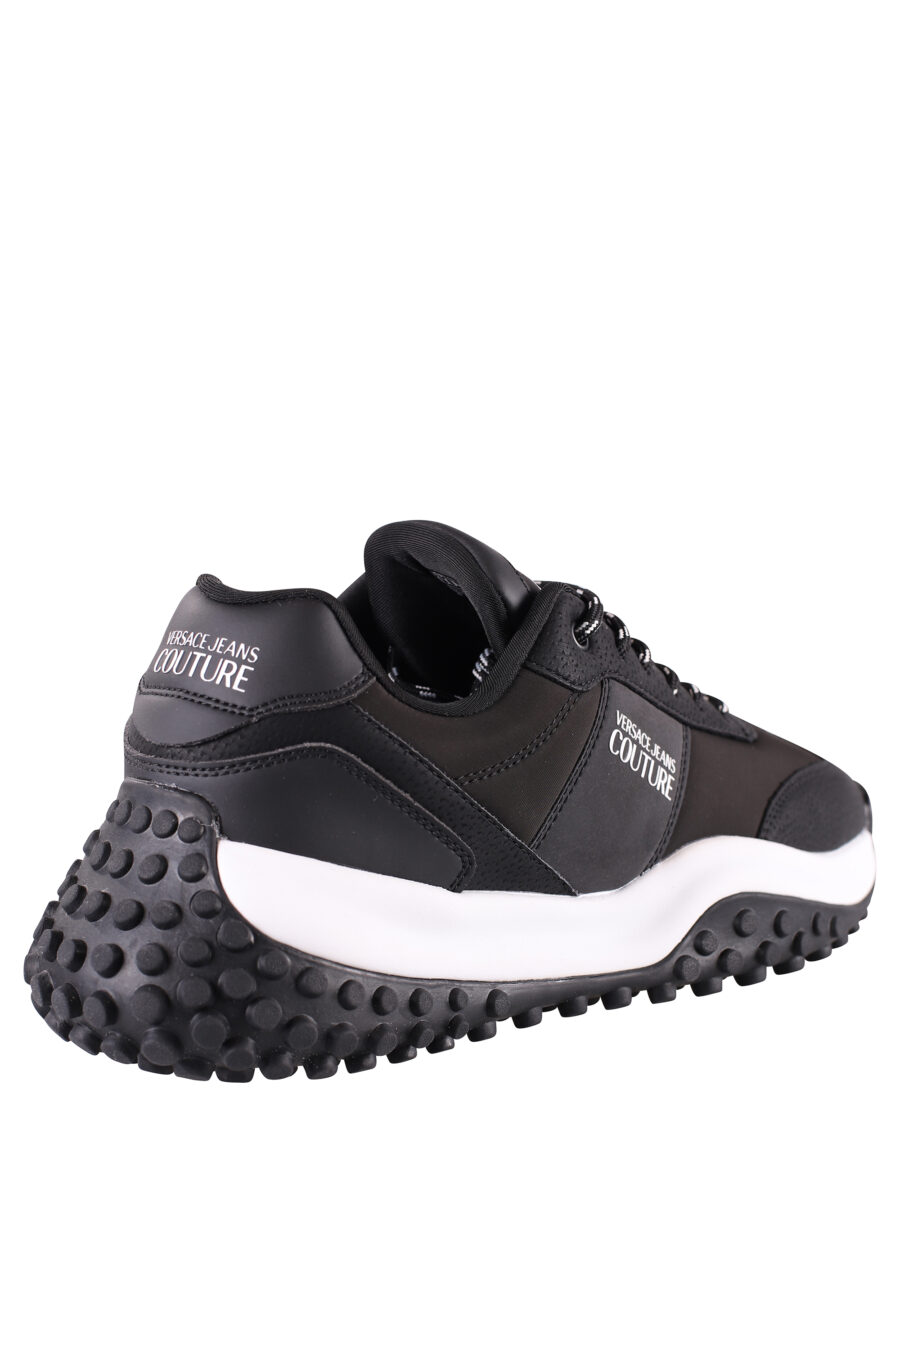 Zapatillas negras con minilogo blanco y suela bicolor - IMG 8489